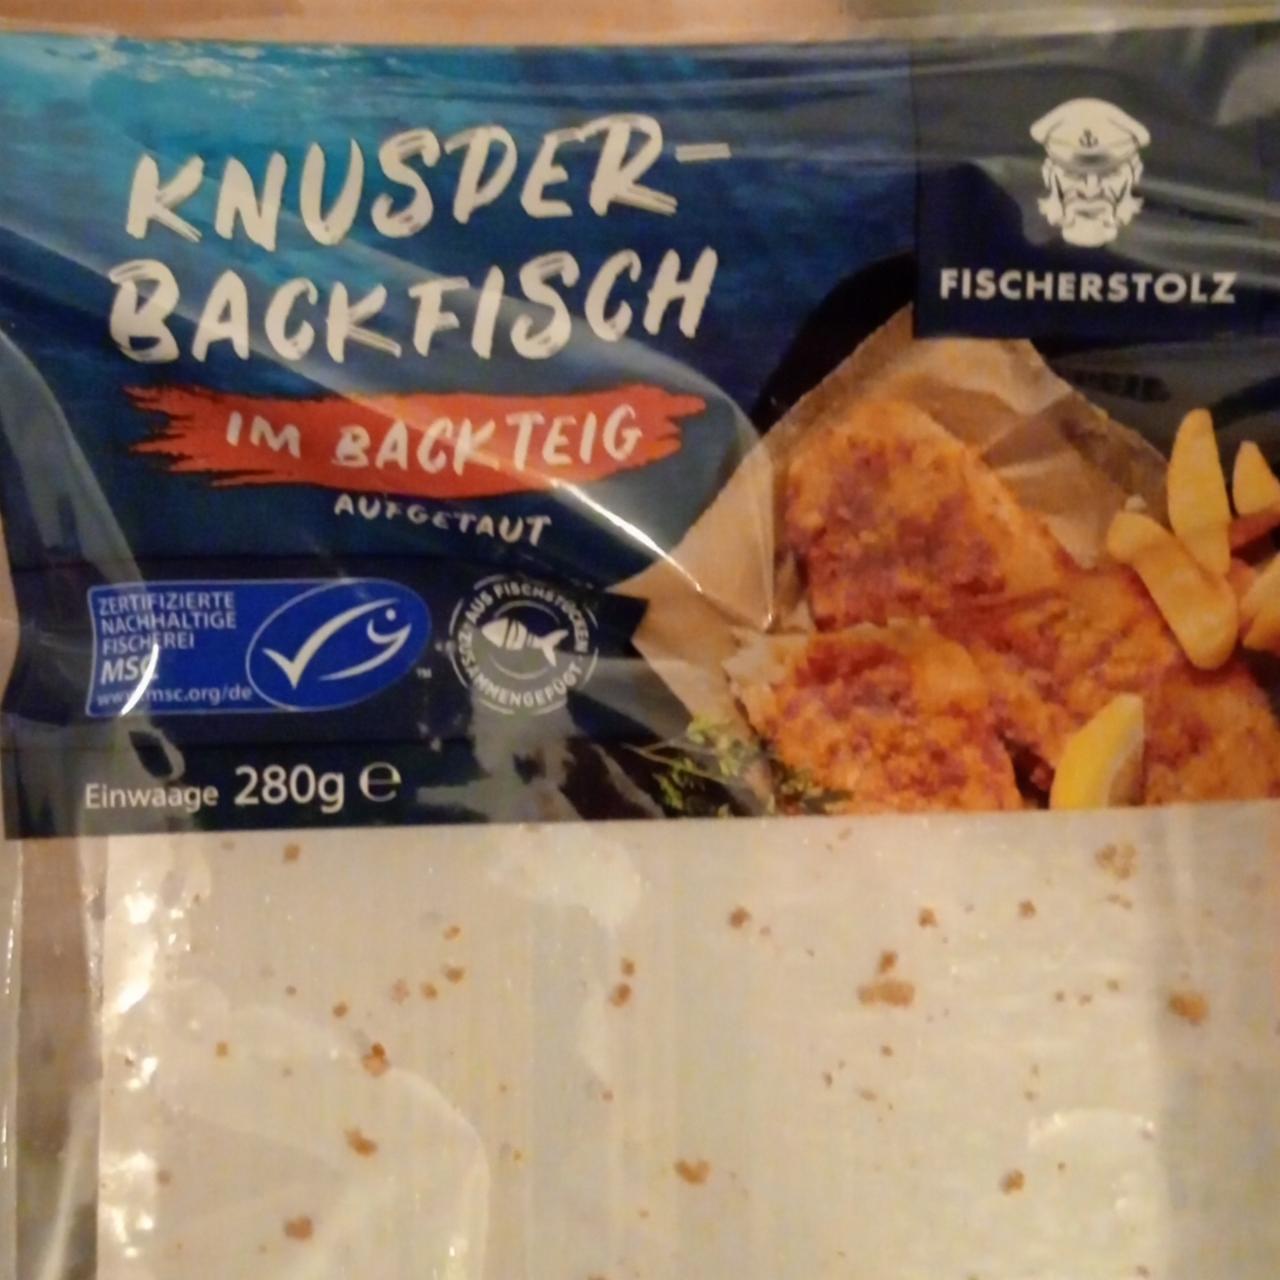 Zdjęcia - Ryba Knuspet Backfisch im backteig FischerStolz